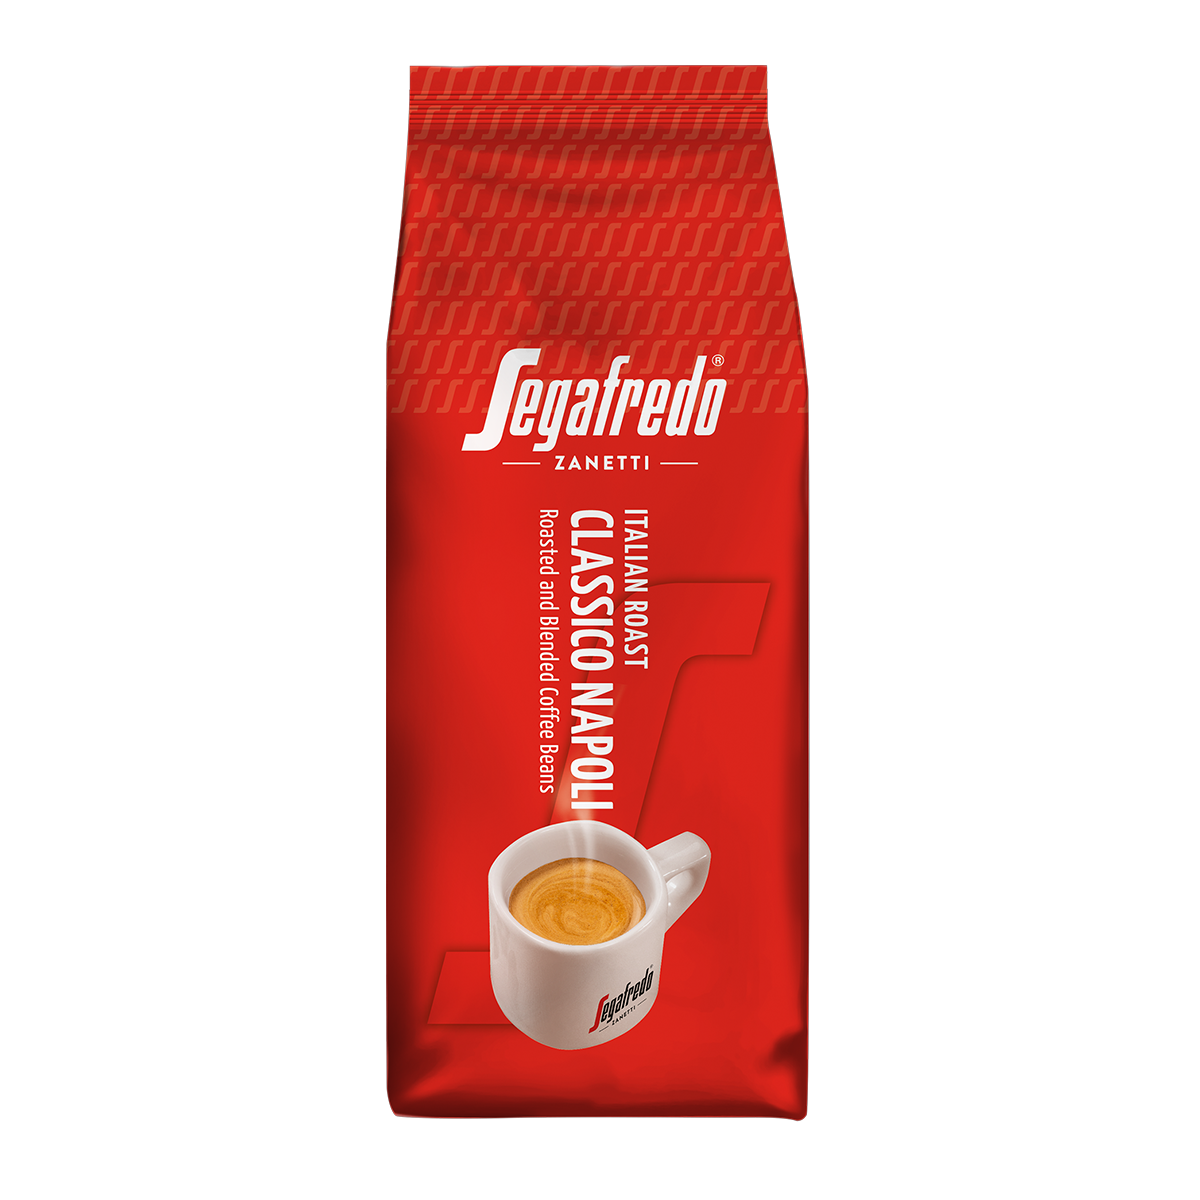 Segafredo Zanetti - Classico Napoli Coffee Bean (500g)